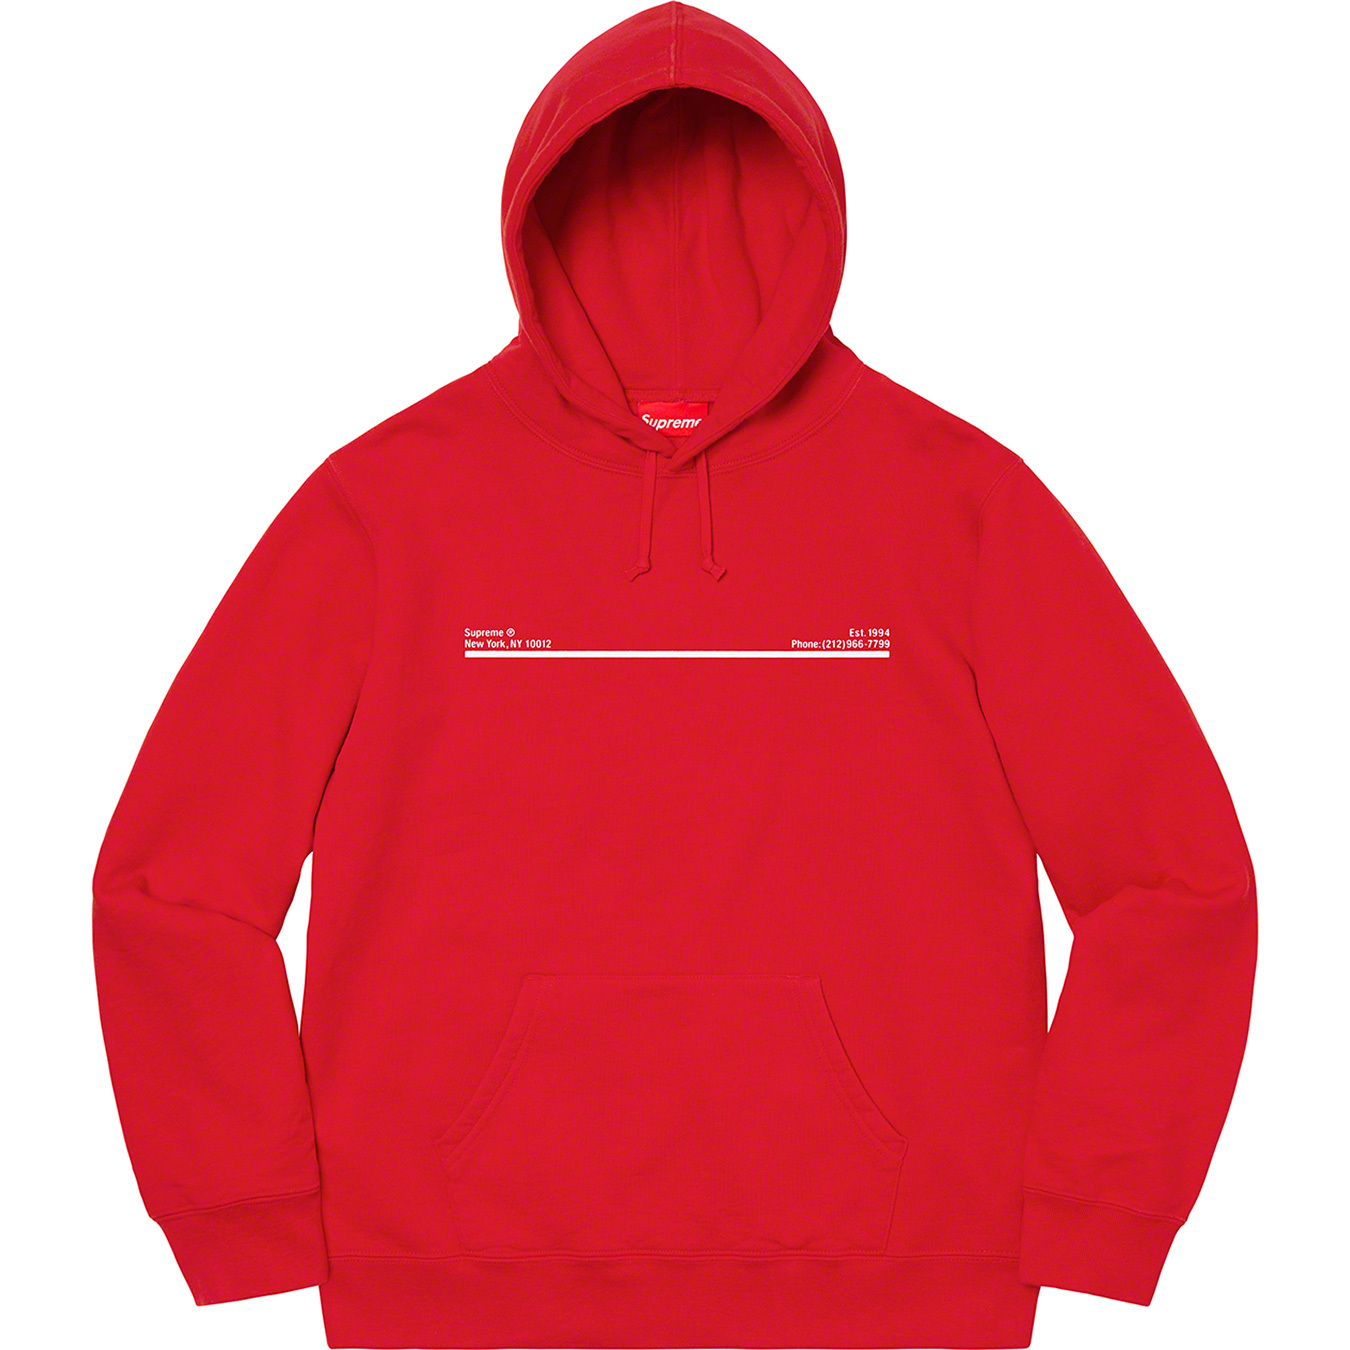 Shop Hooded Sweatshirt | Supreme 20fw